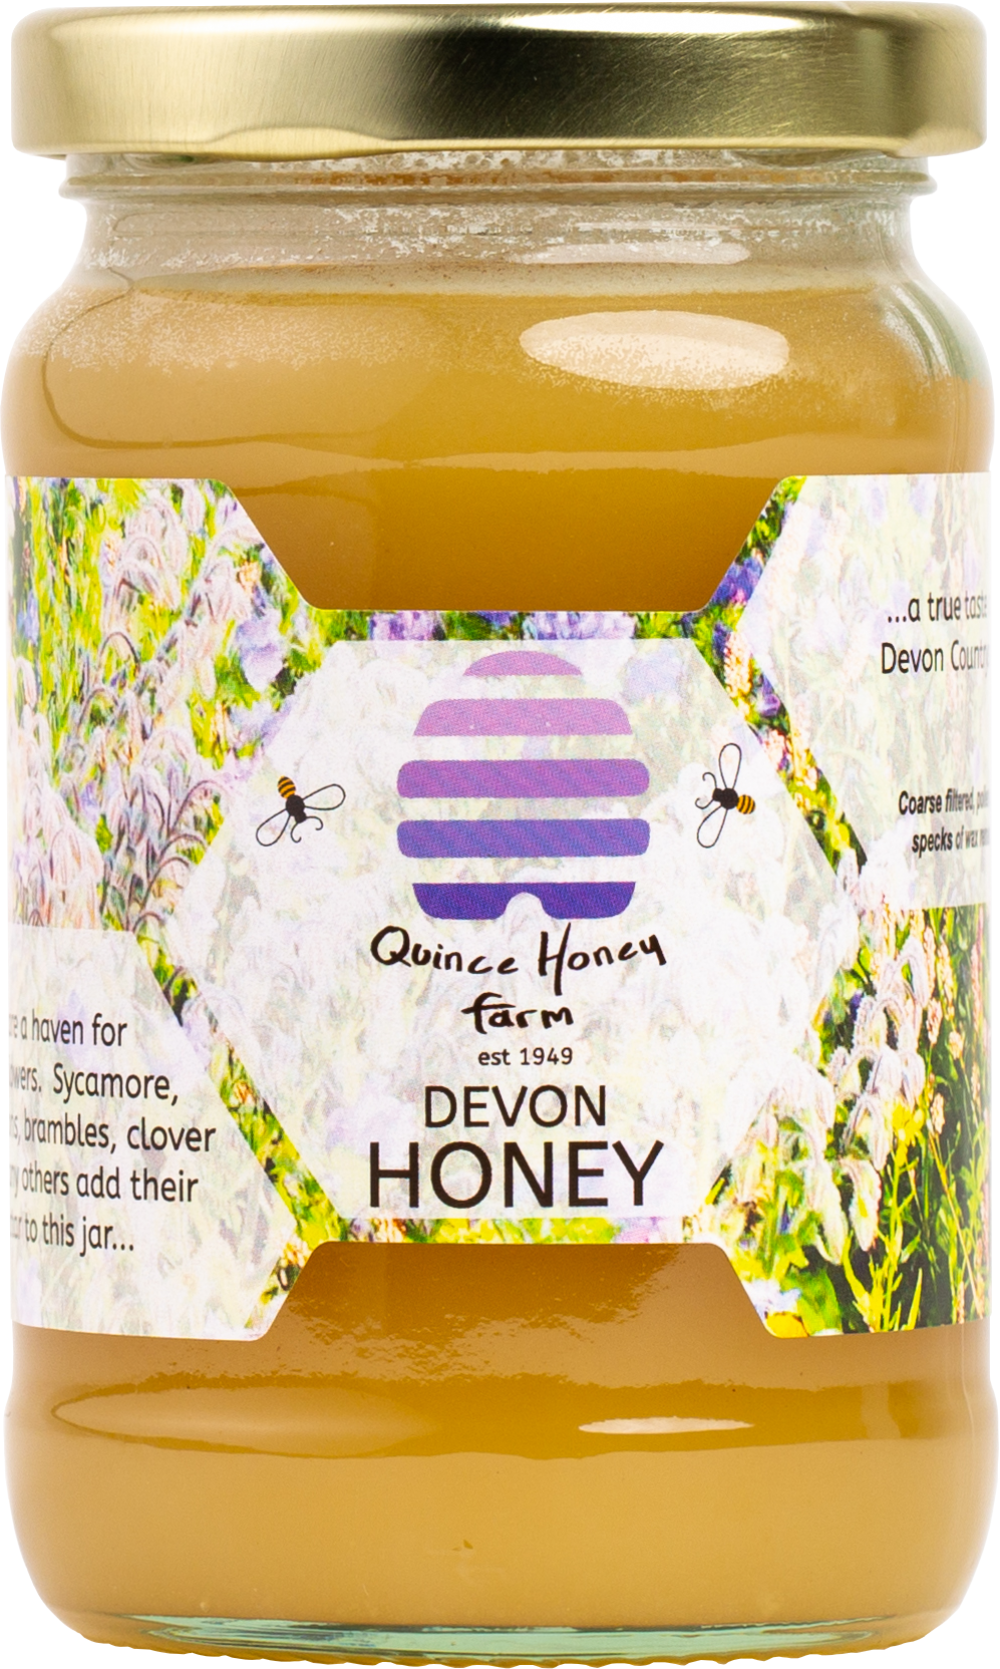 QUINCE HONEY FARM Devon Honey - Set 340g